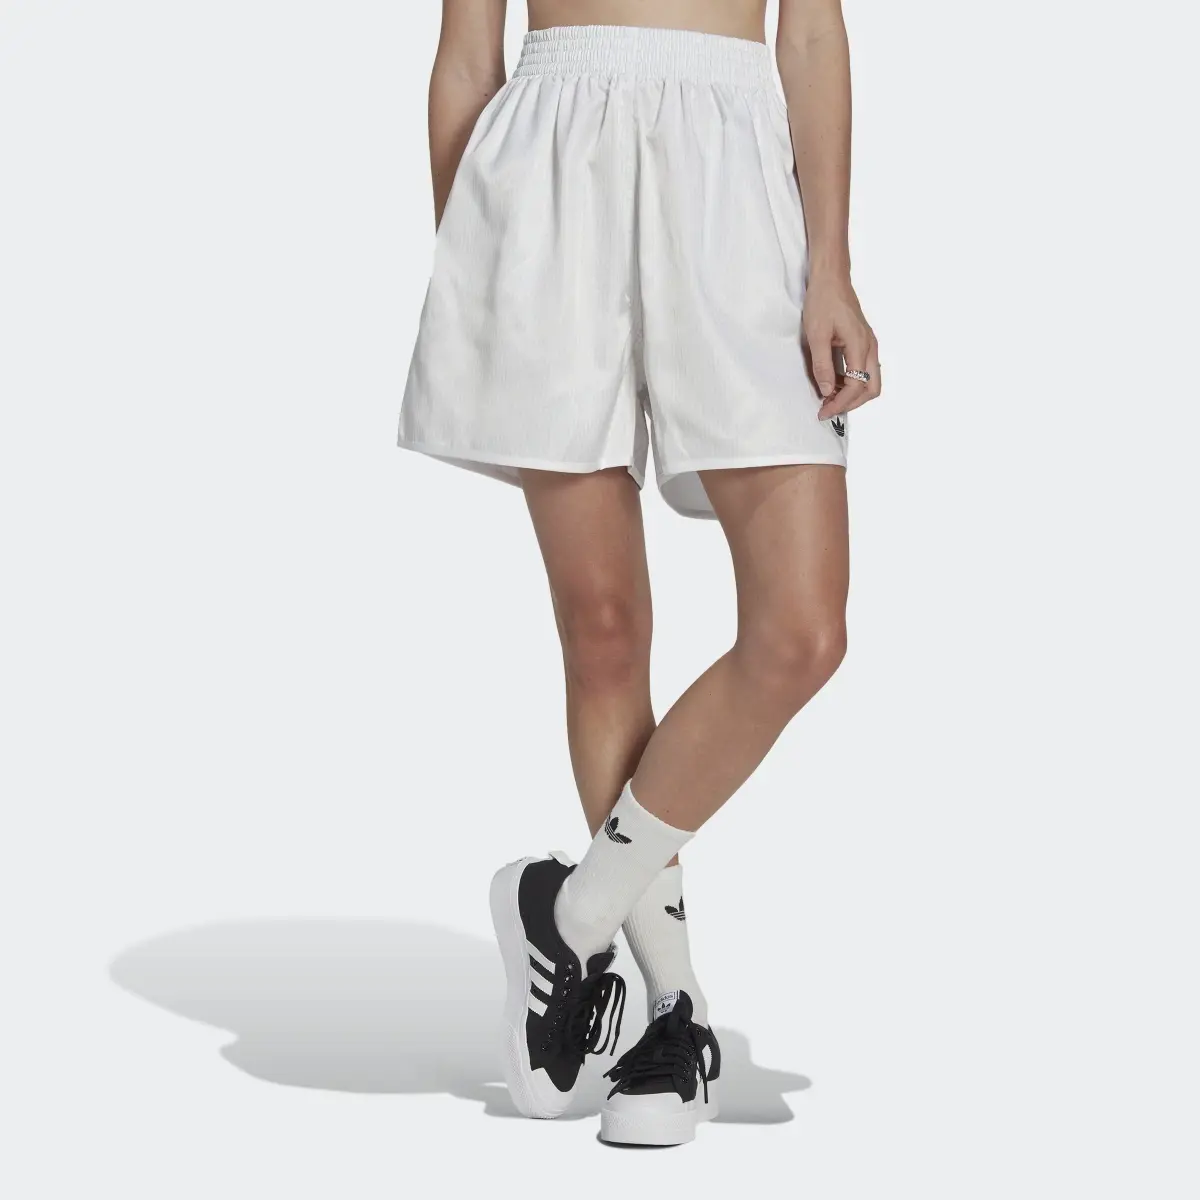 Adidas Loose Allover Print Satin Shorts. 1